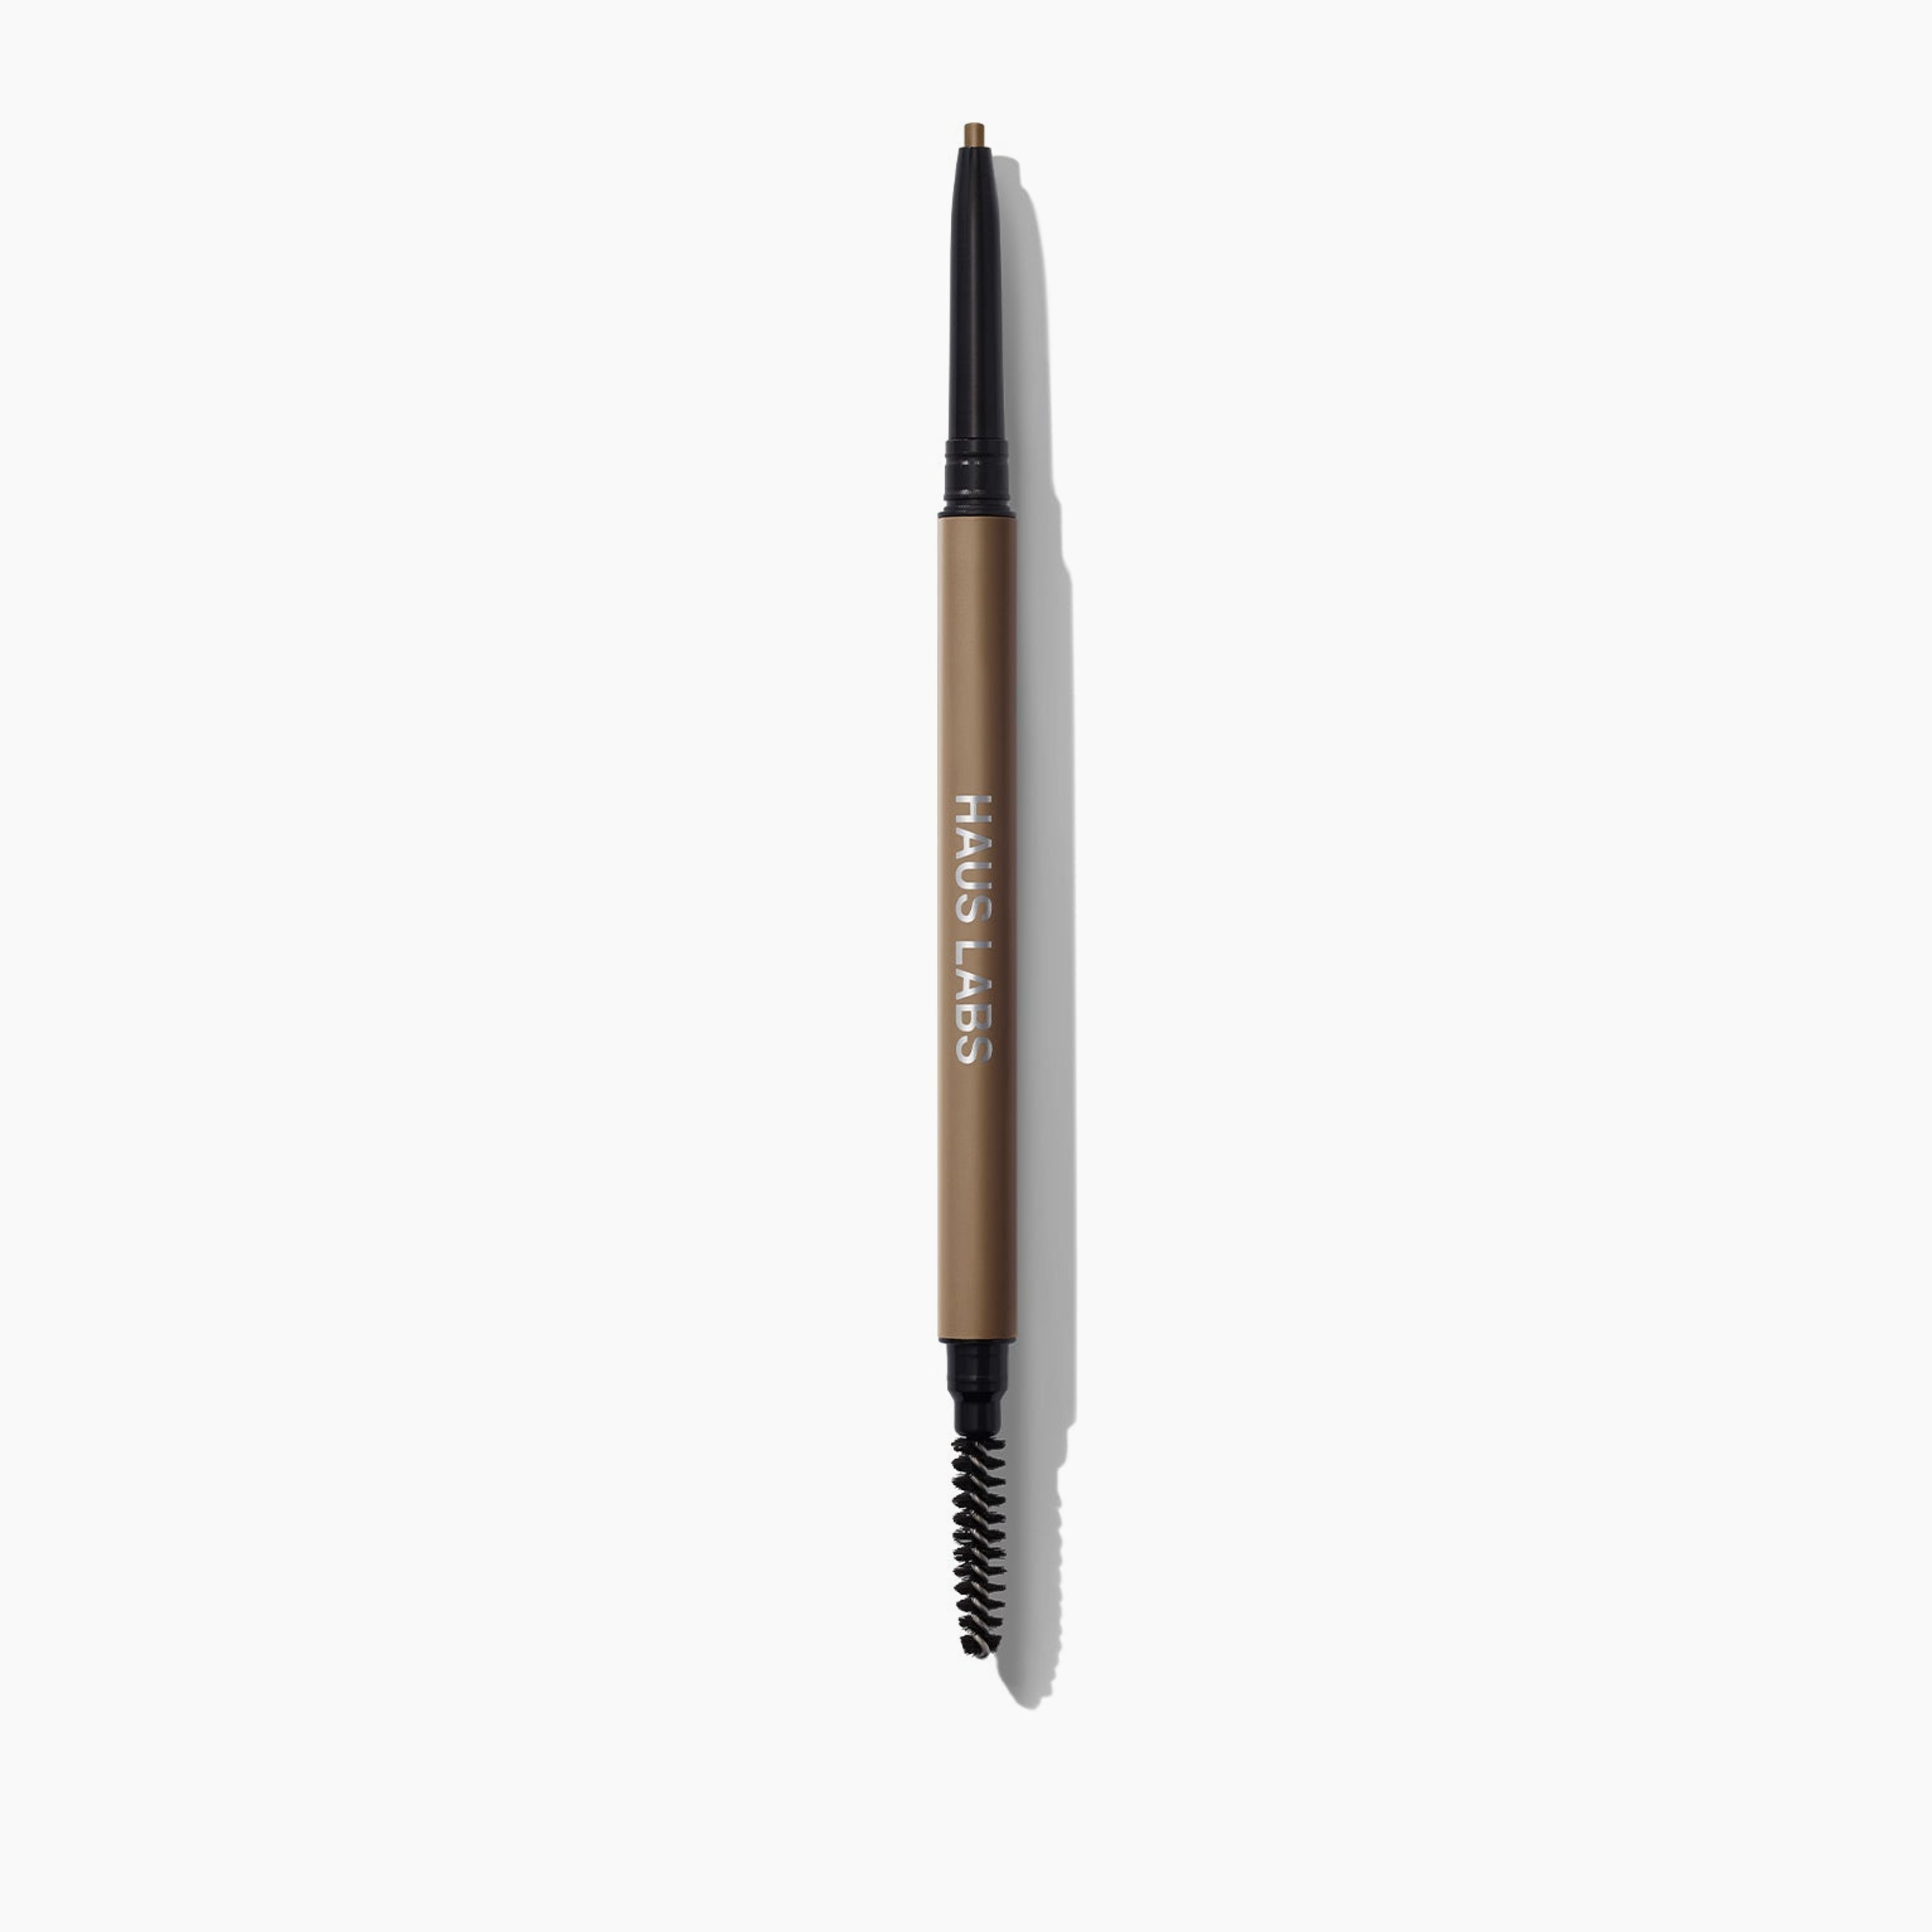 The Edge Precision Brow Pencil